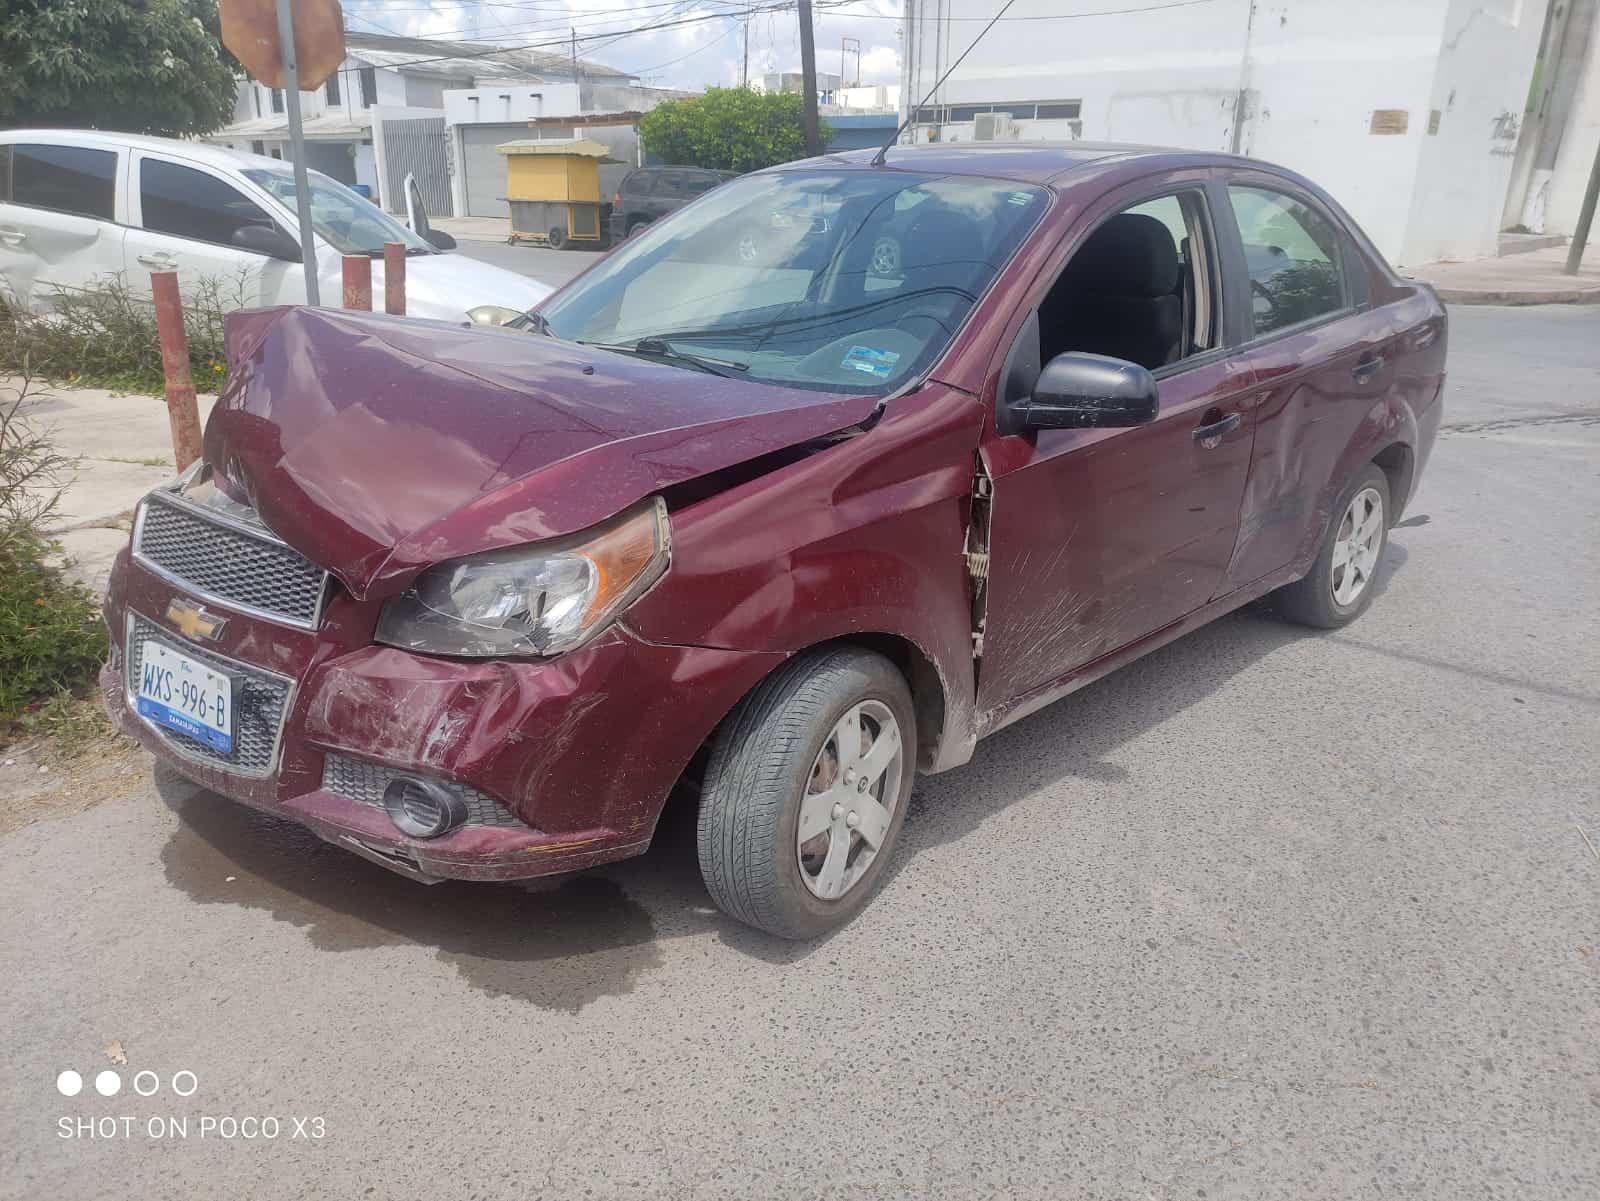 El Chevrolet color guinda, sufrió severos daños en parte anterior. (Foto: La Tarde/Staff)